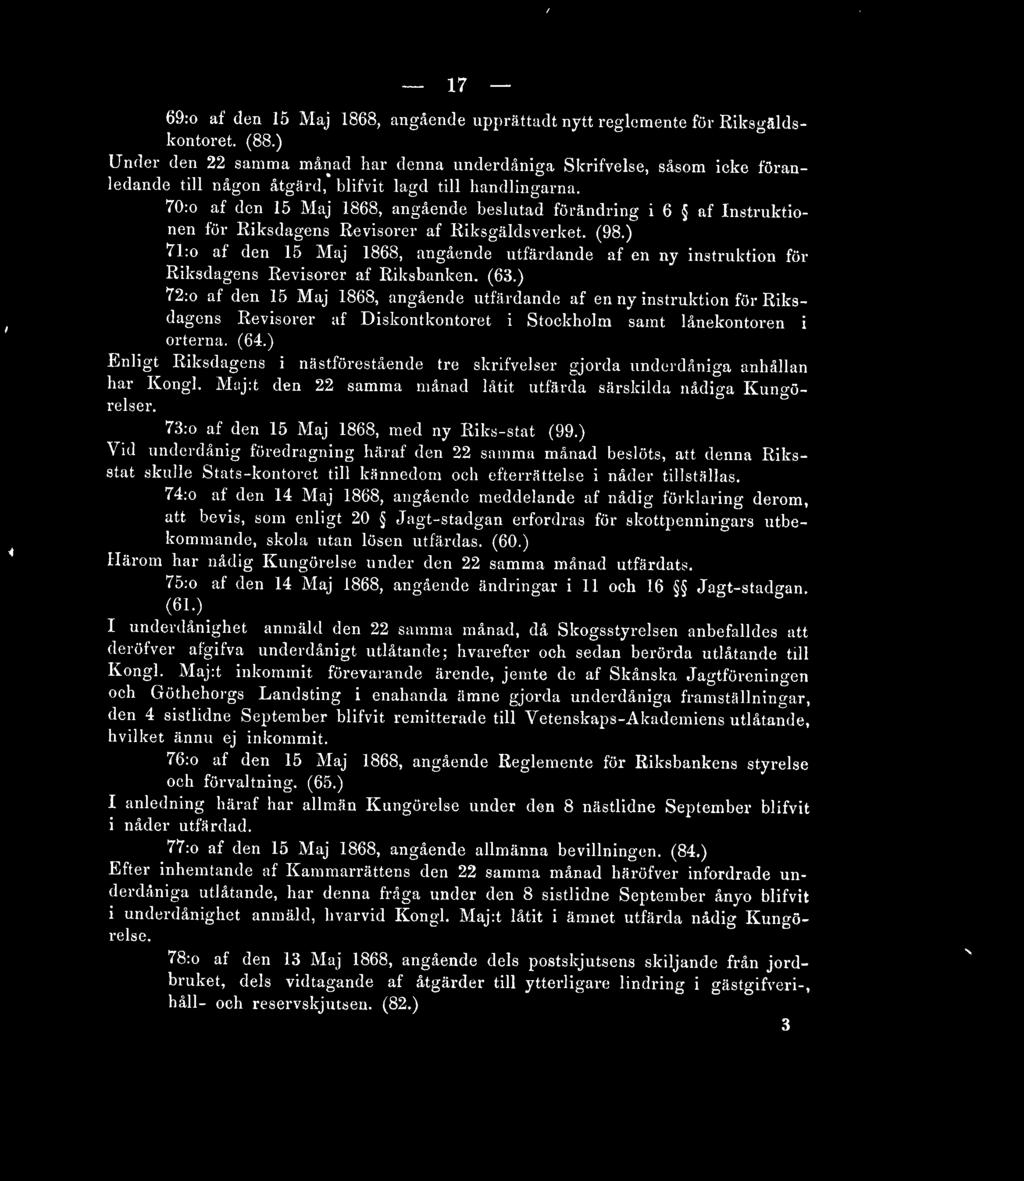 70:o af den 15 Maj 1868, angående beslutad förändring i 6 af Instruktionen för Riksdagens Revisorer af Riksgäldsverket. (98.